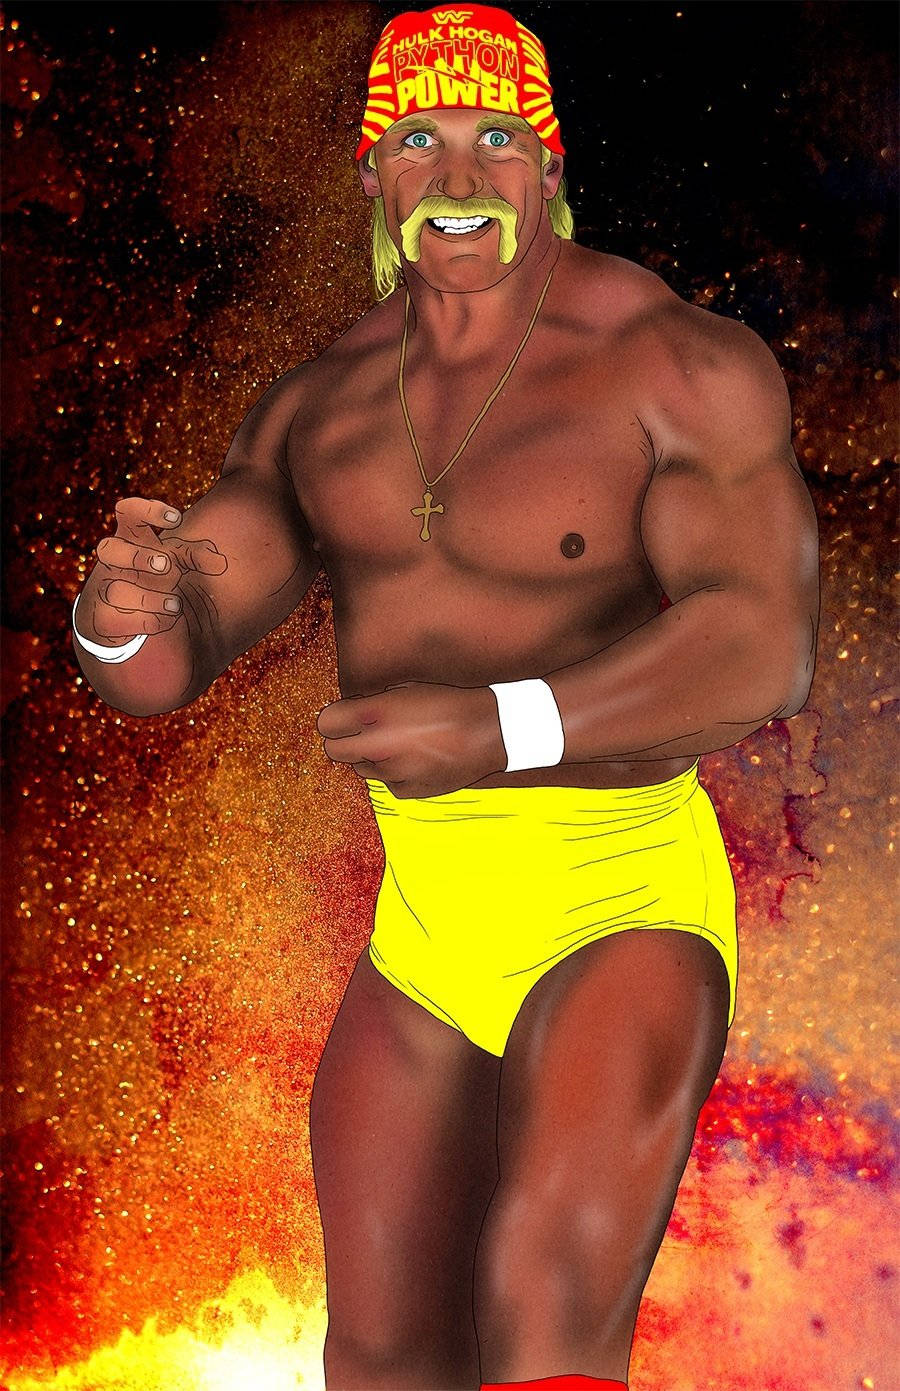 Hulk Hogan Digital Painting